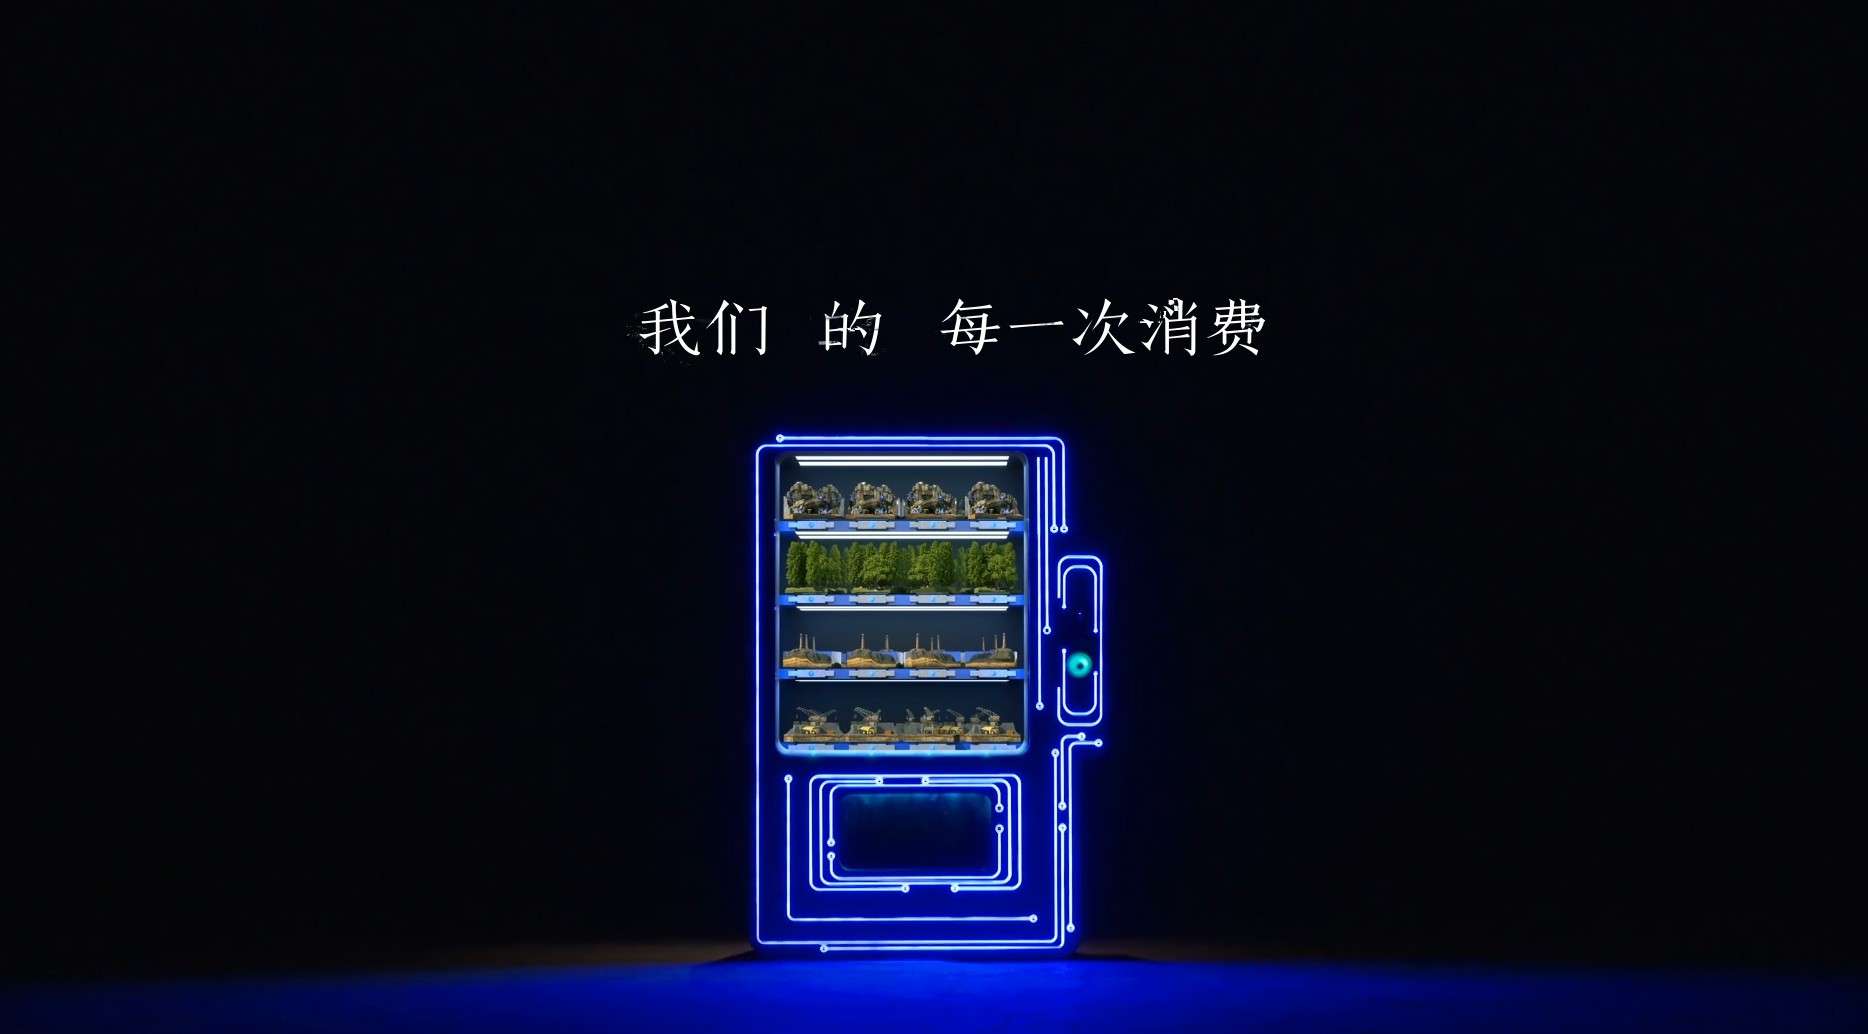 湖南卫视 公益宣传片《别让现在售空未来》